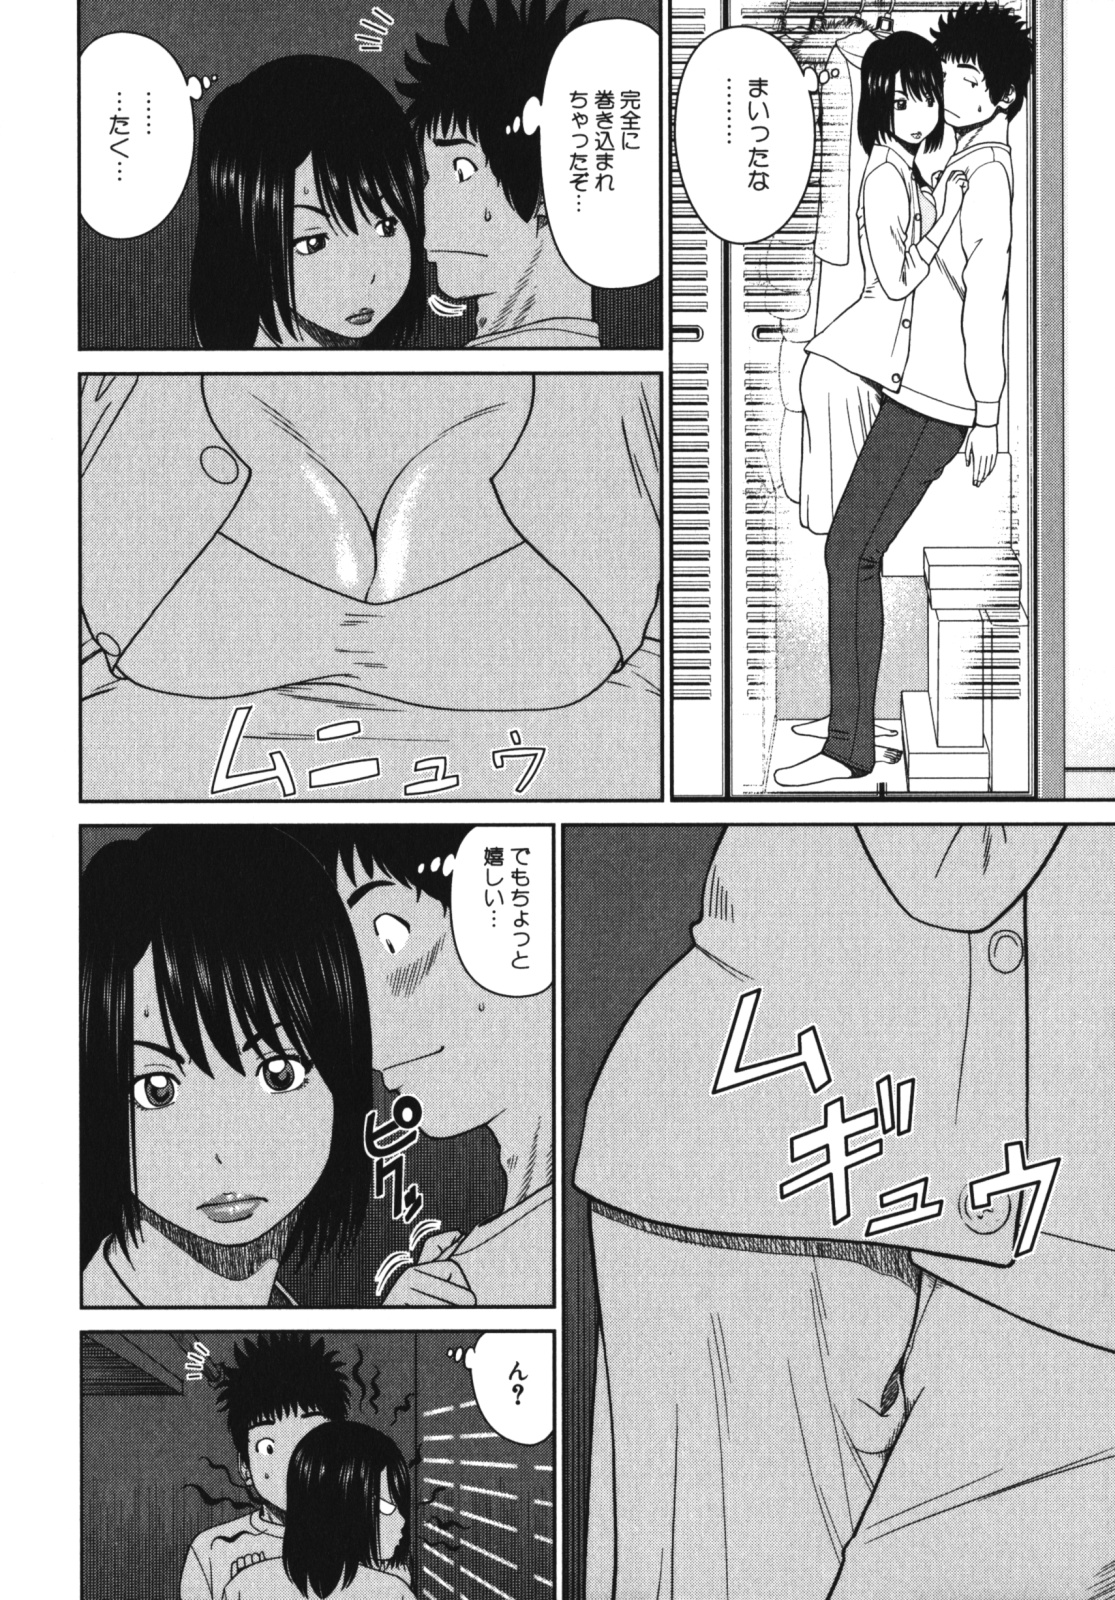 [Anthology] Geki Yaba Vol.4 - Namade Shitene page 13 full